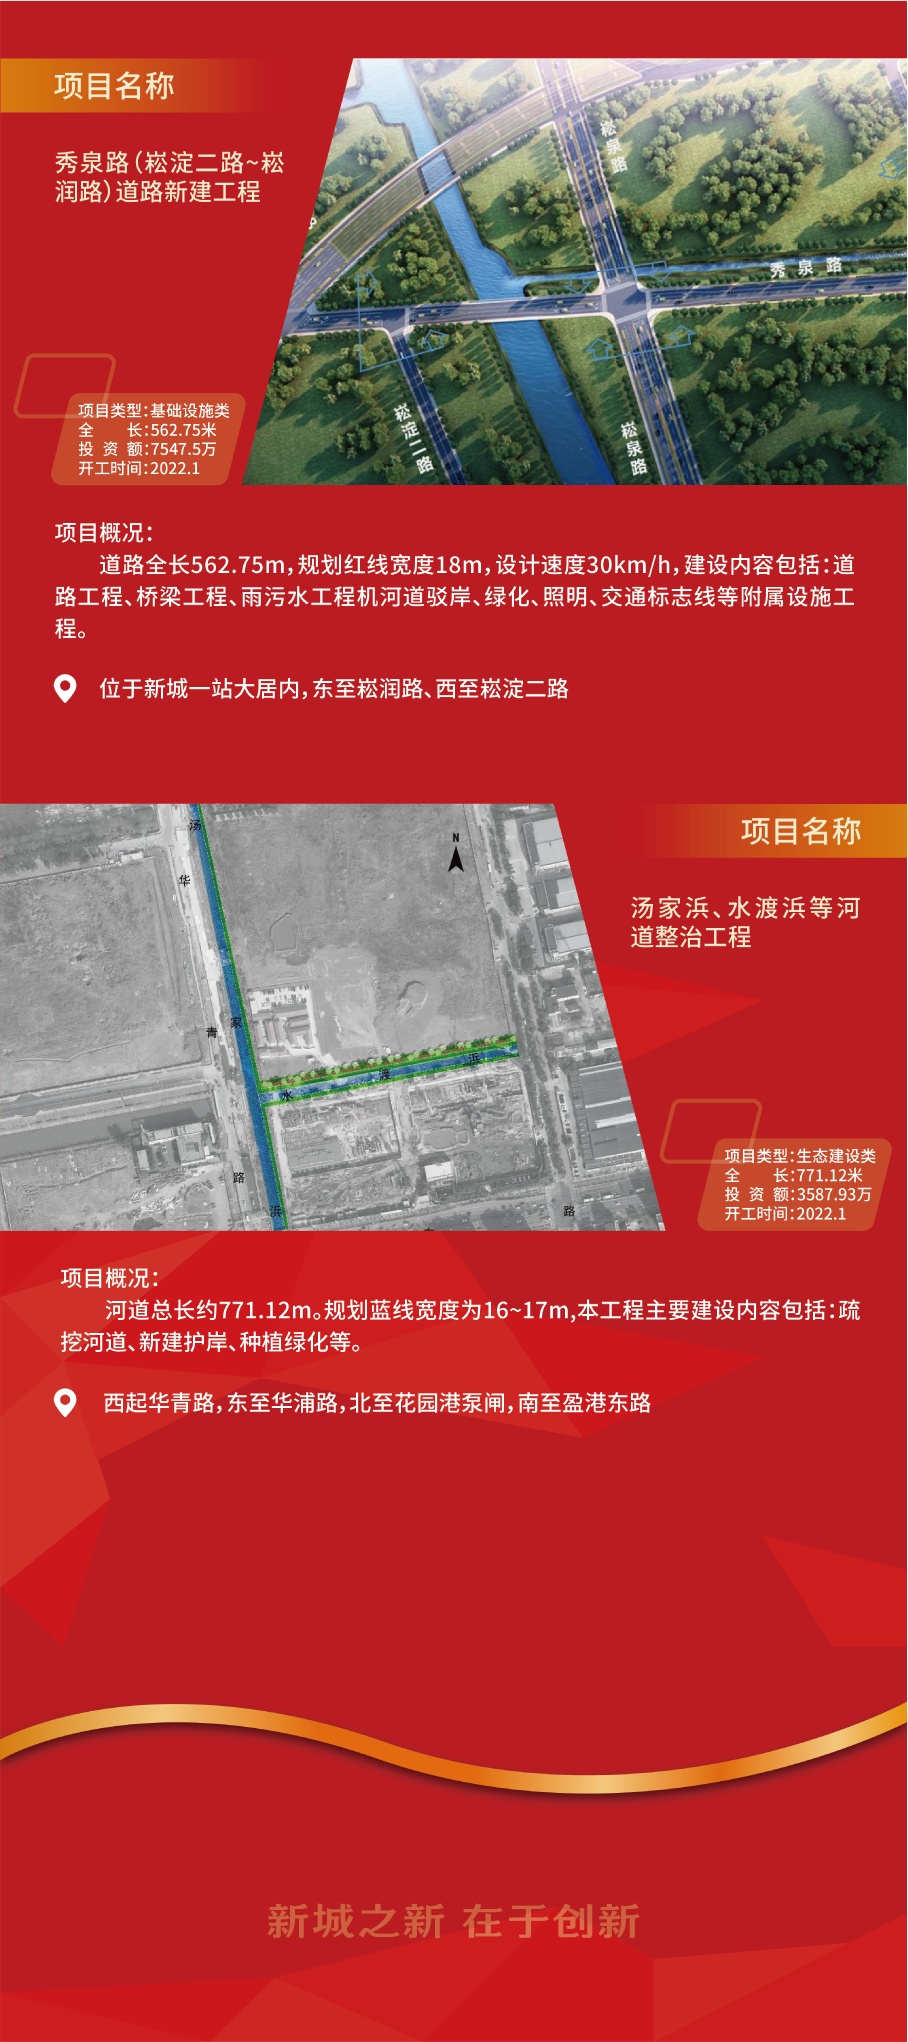 2022年青浦新城首批重大项目集中开工签约